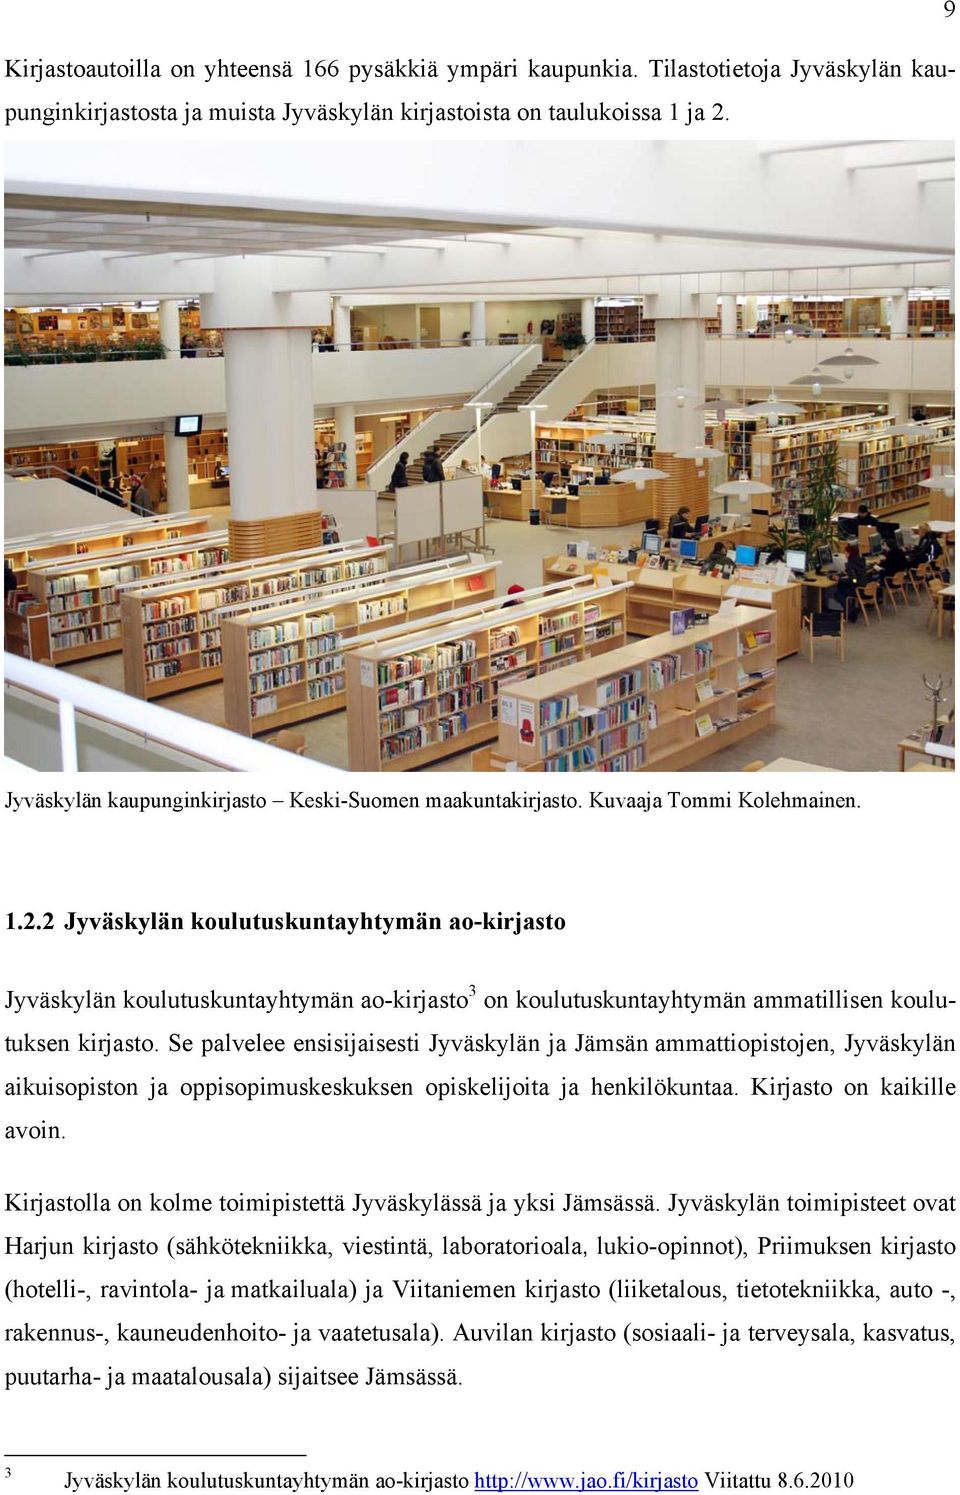 2 Jyväskylän koulutuskuntayhtymän ao-kirjasto Jyväskylän koulutuskuntayhtymän ao-kirjasto 3 on koulutuskuntayhtymän ammatillisen koulutuksen kirjasto.